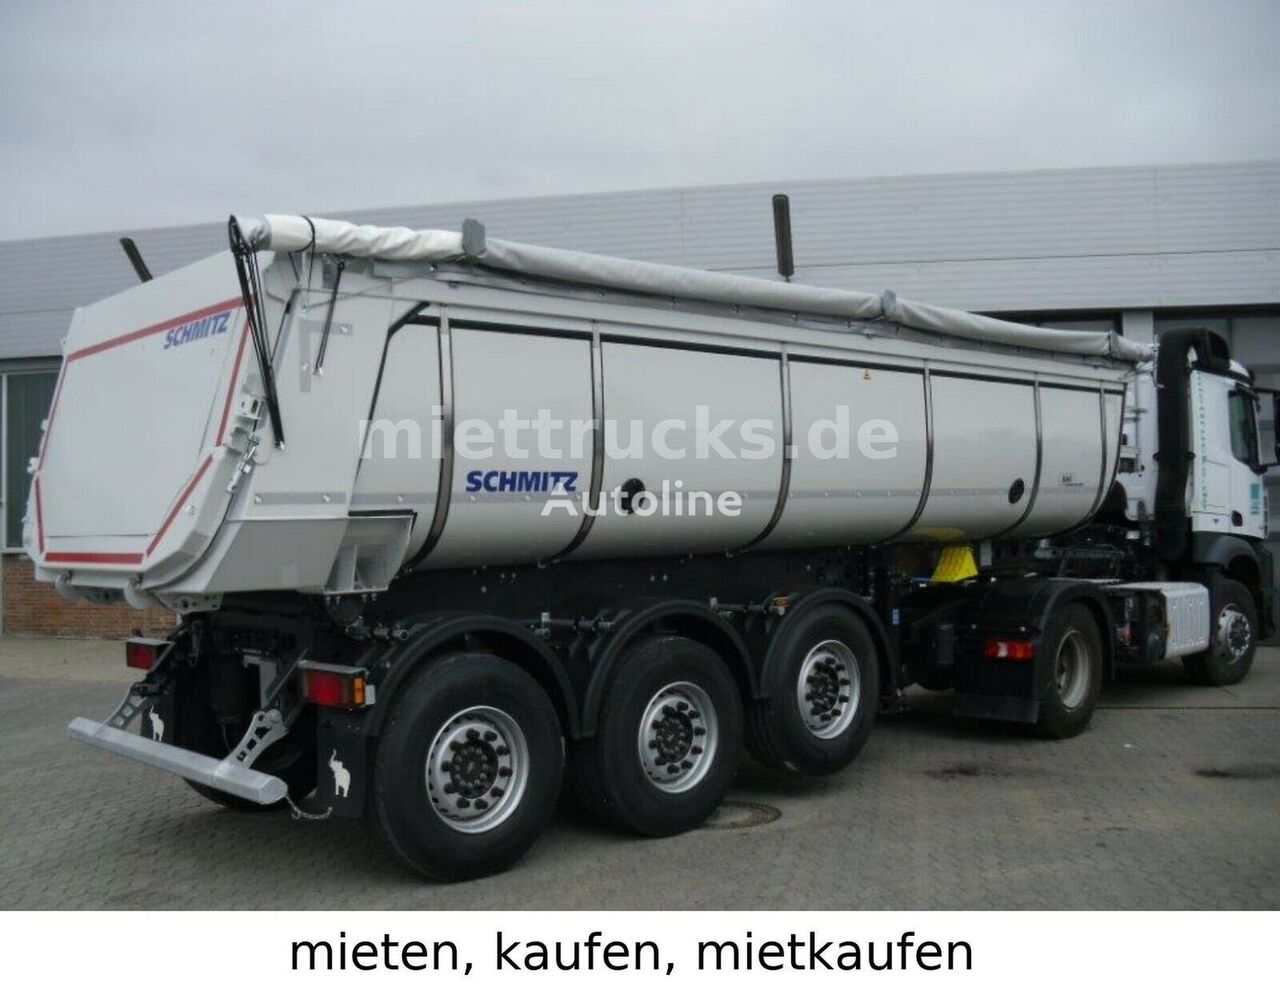 καινούριο ημιρυμουλκούμενο ανατροπής Schmitz Cargobull Thermo,mieten,kaufen,mietkaufen 689€